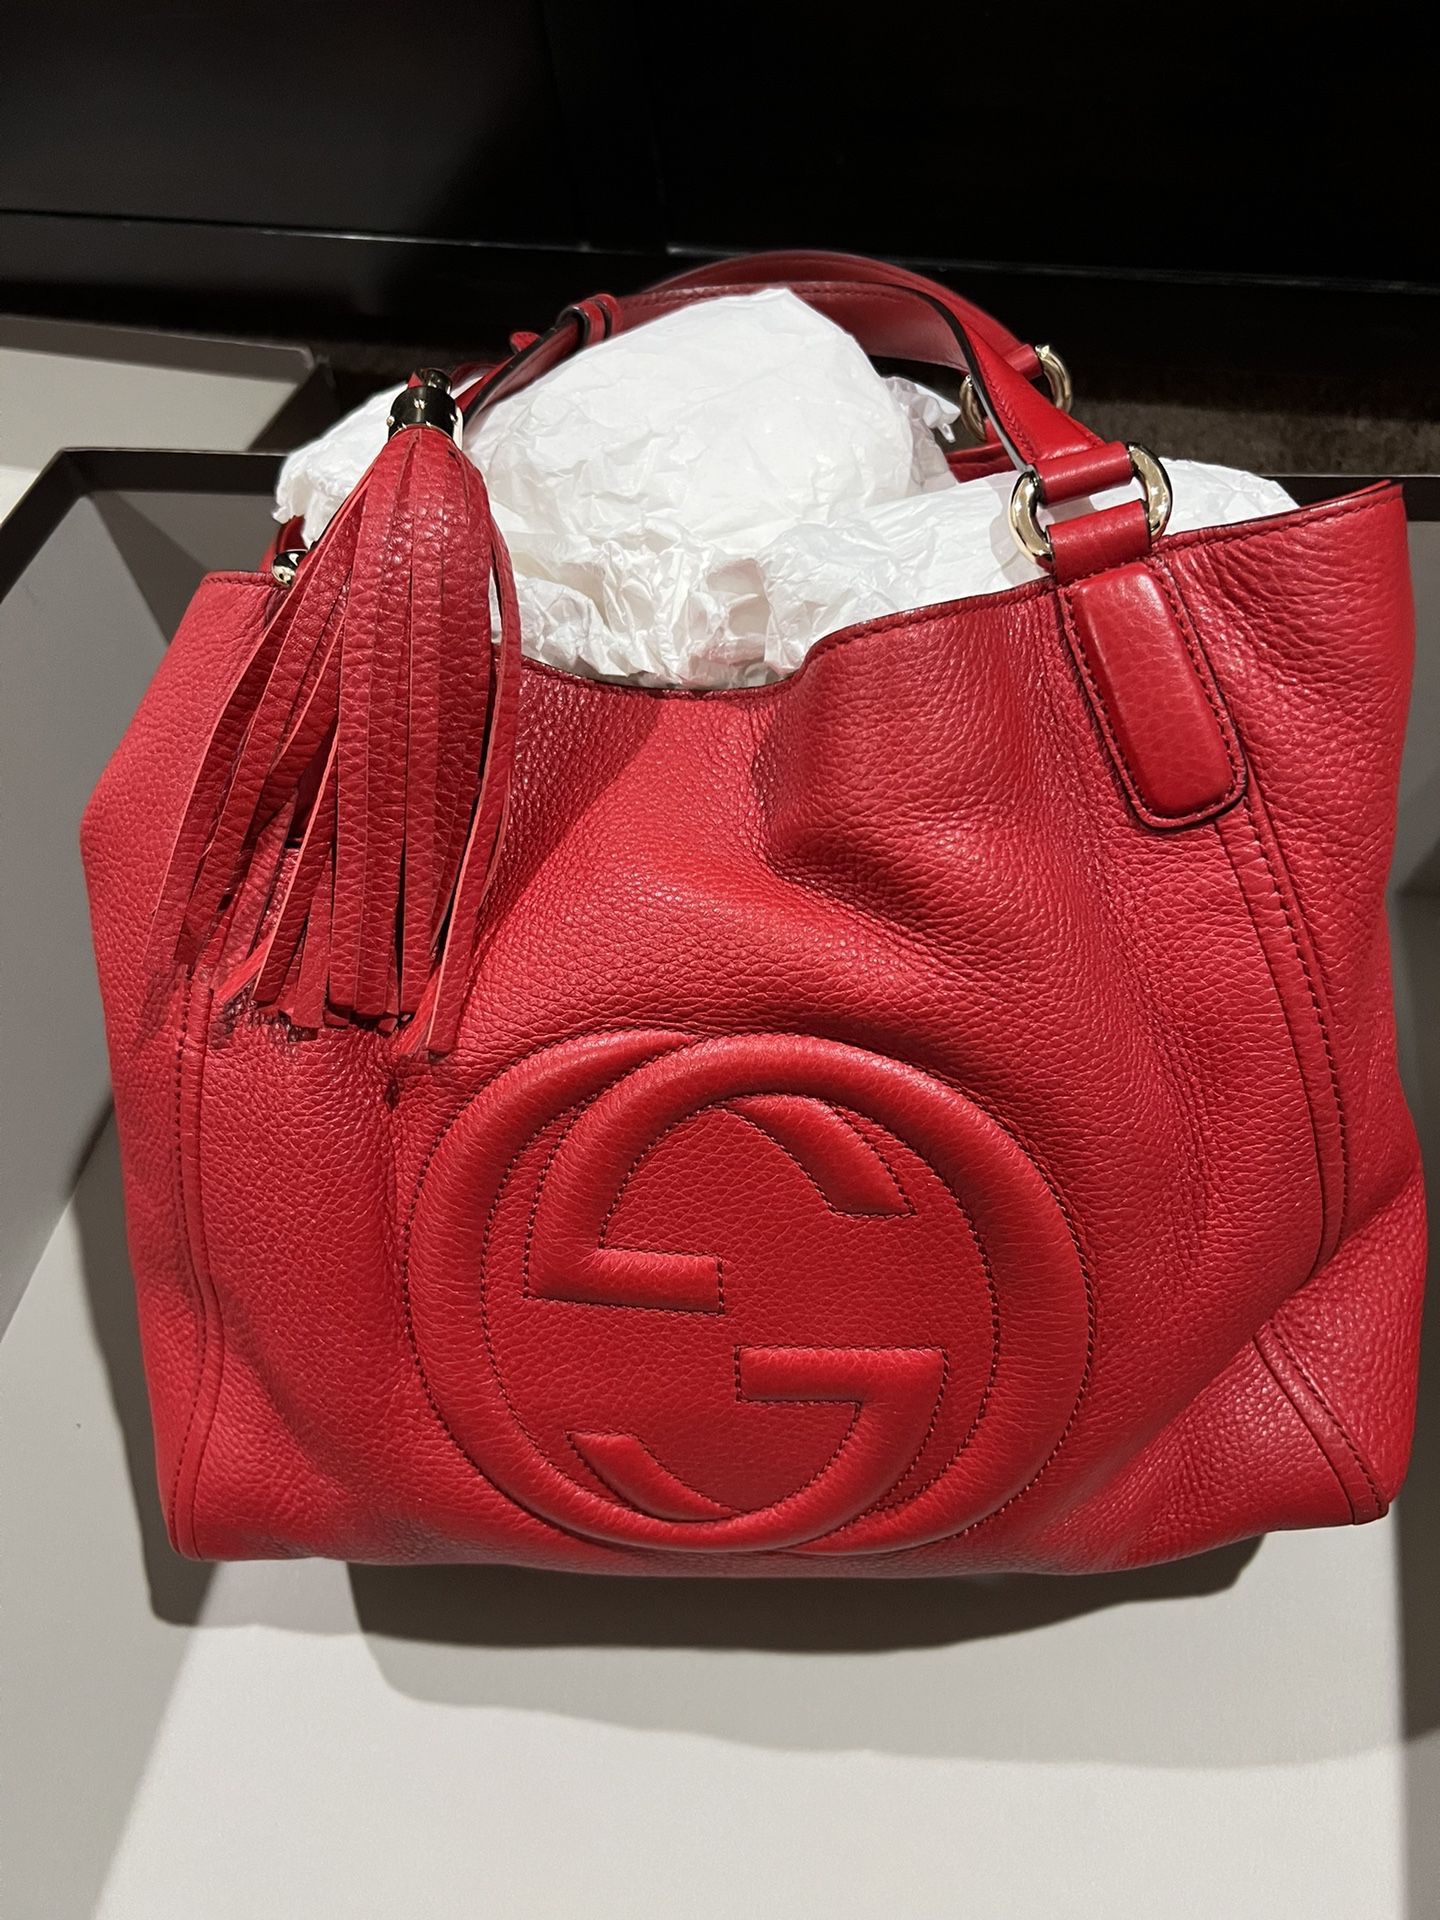 Red Gucci shoulder/tote bag